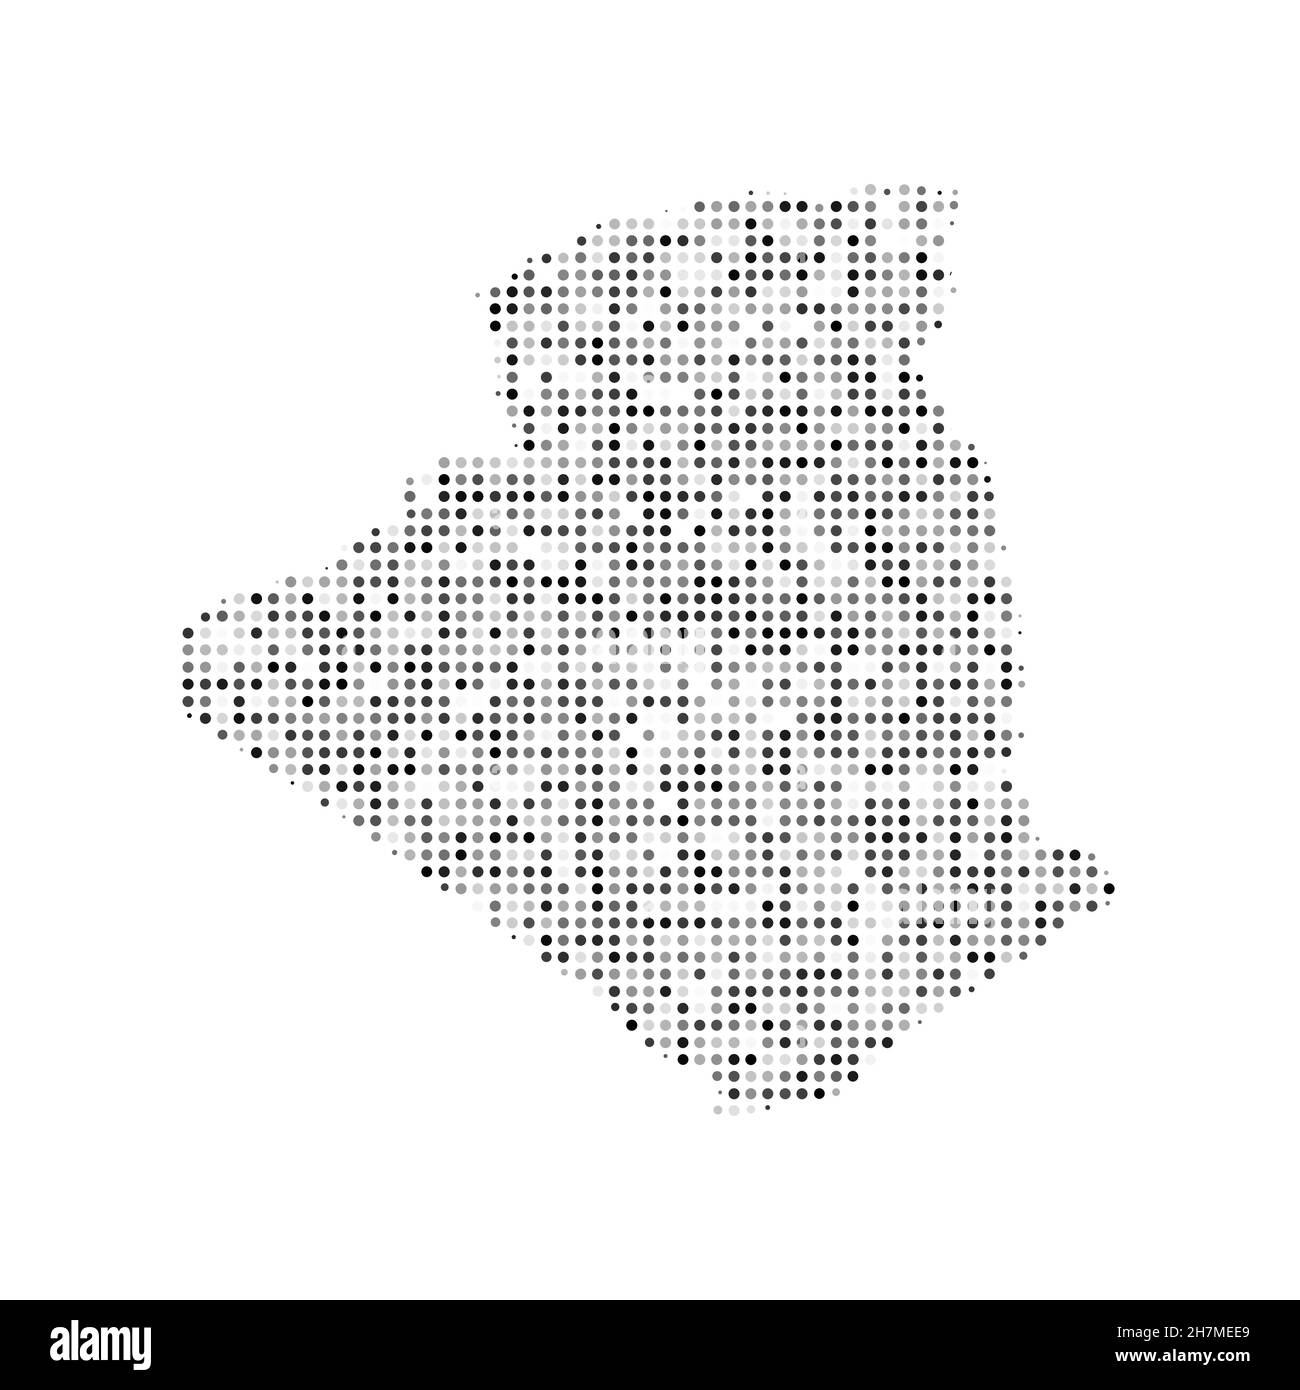 Abstrakte gepunktete schwarz-weiße Halbtoneffekt-Vektorkarte von Algerien. Landeskarte digitale gepunktete Design-Vektor-Illustration. Stock Vektor